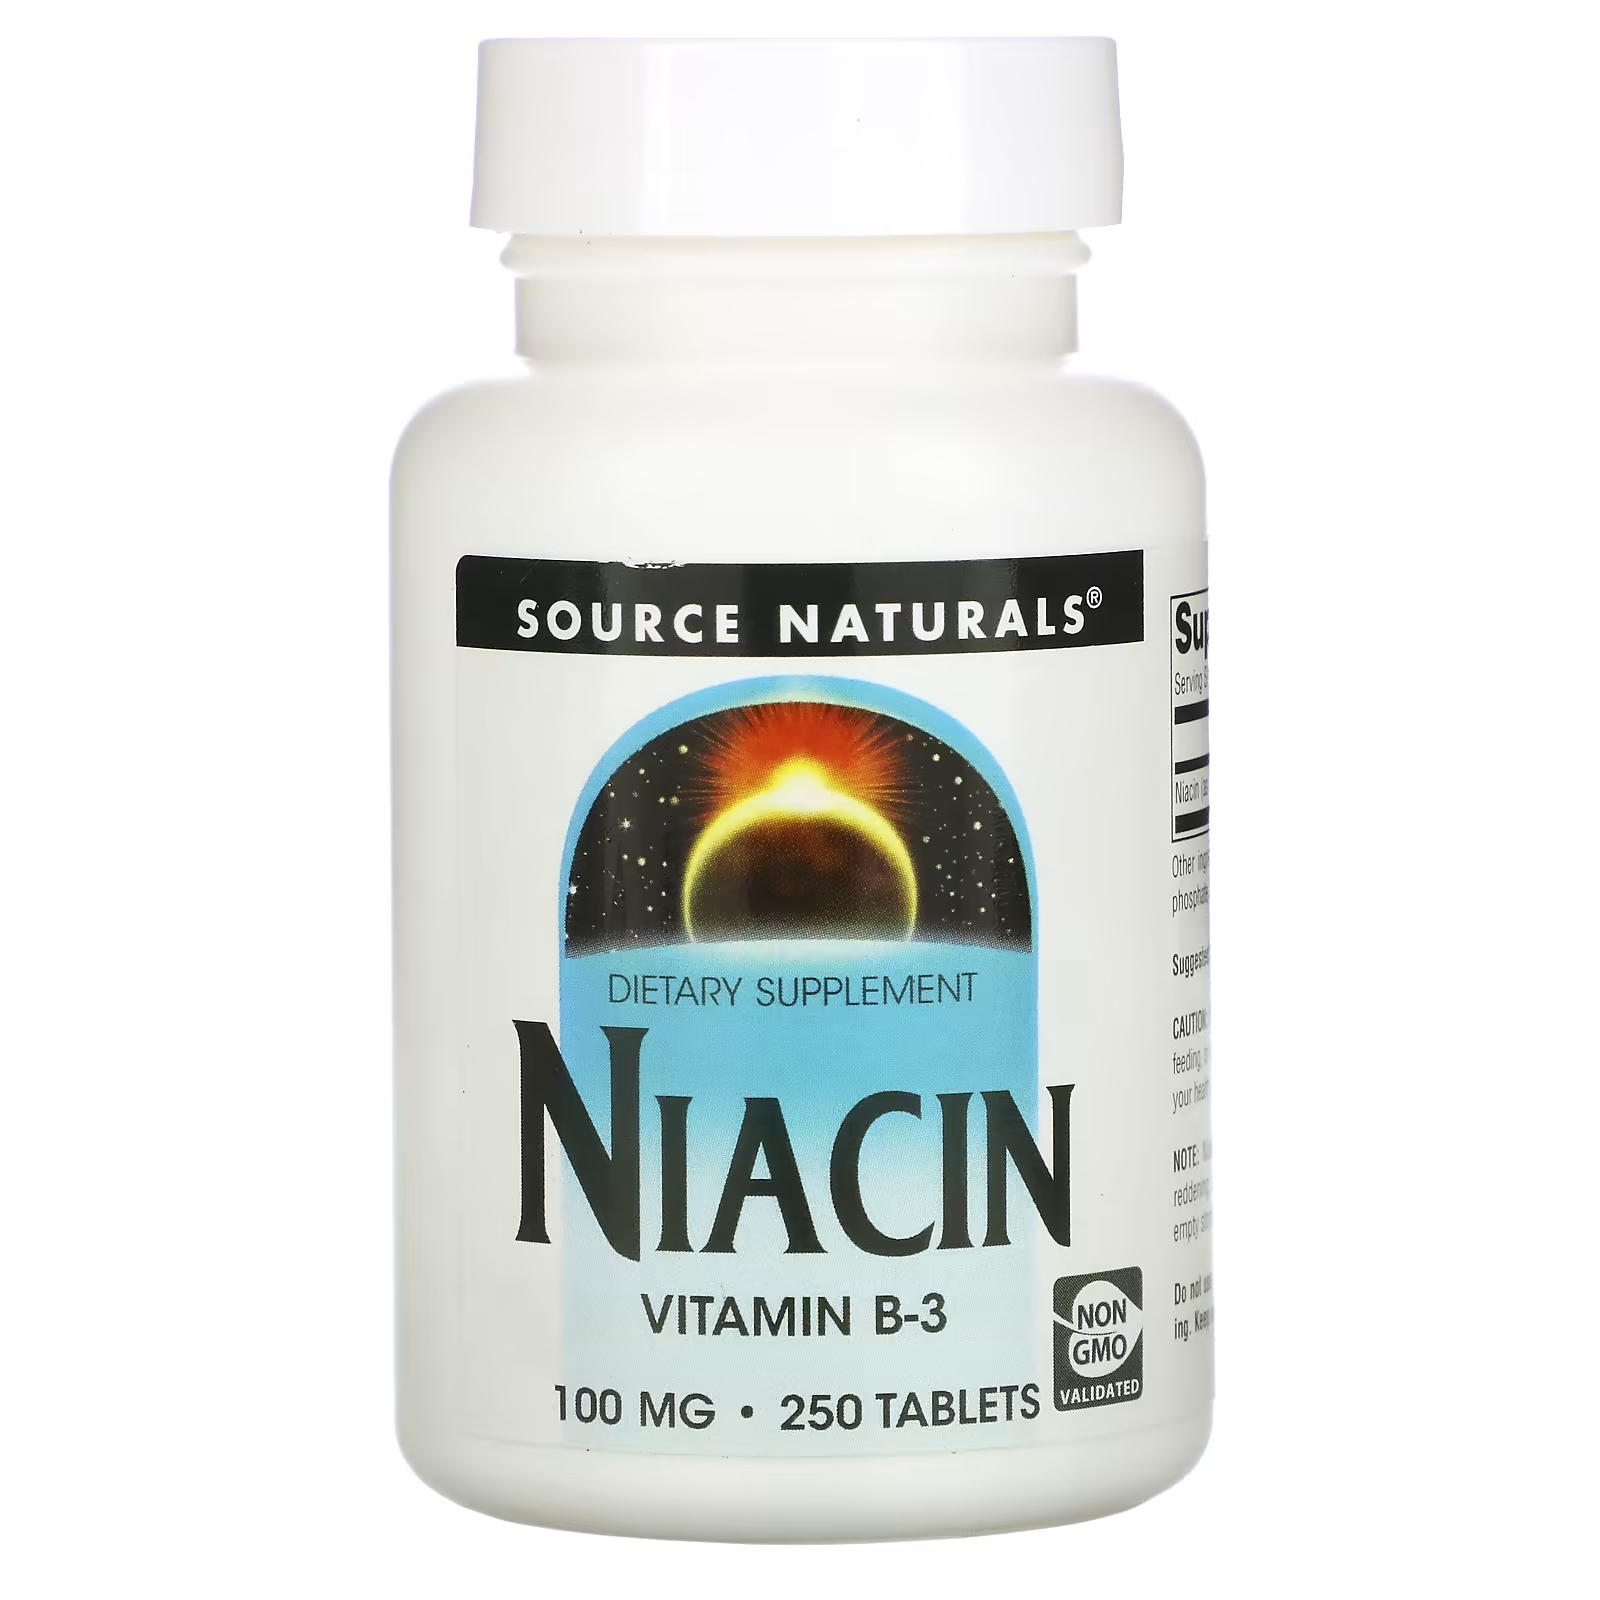 Source Naturals ниацин 100 мг, 250 таблеток source naturals комплекс хелата магния 100 мг 250 таблеток